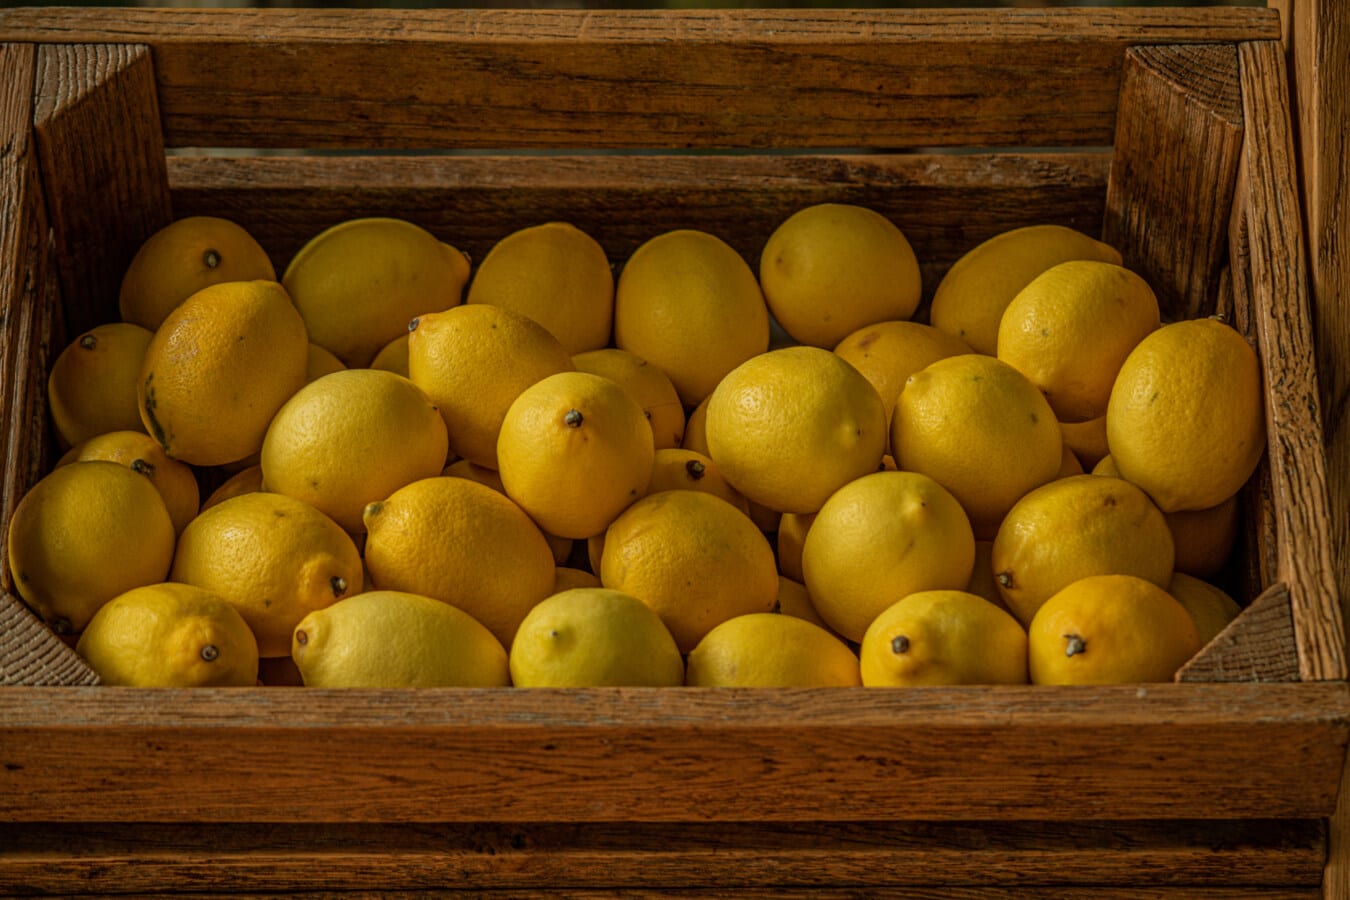 limón, cítricos, fruta madura, madera, caja, orgánica, agricultura, alimentos, producir, fruta